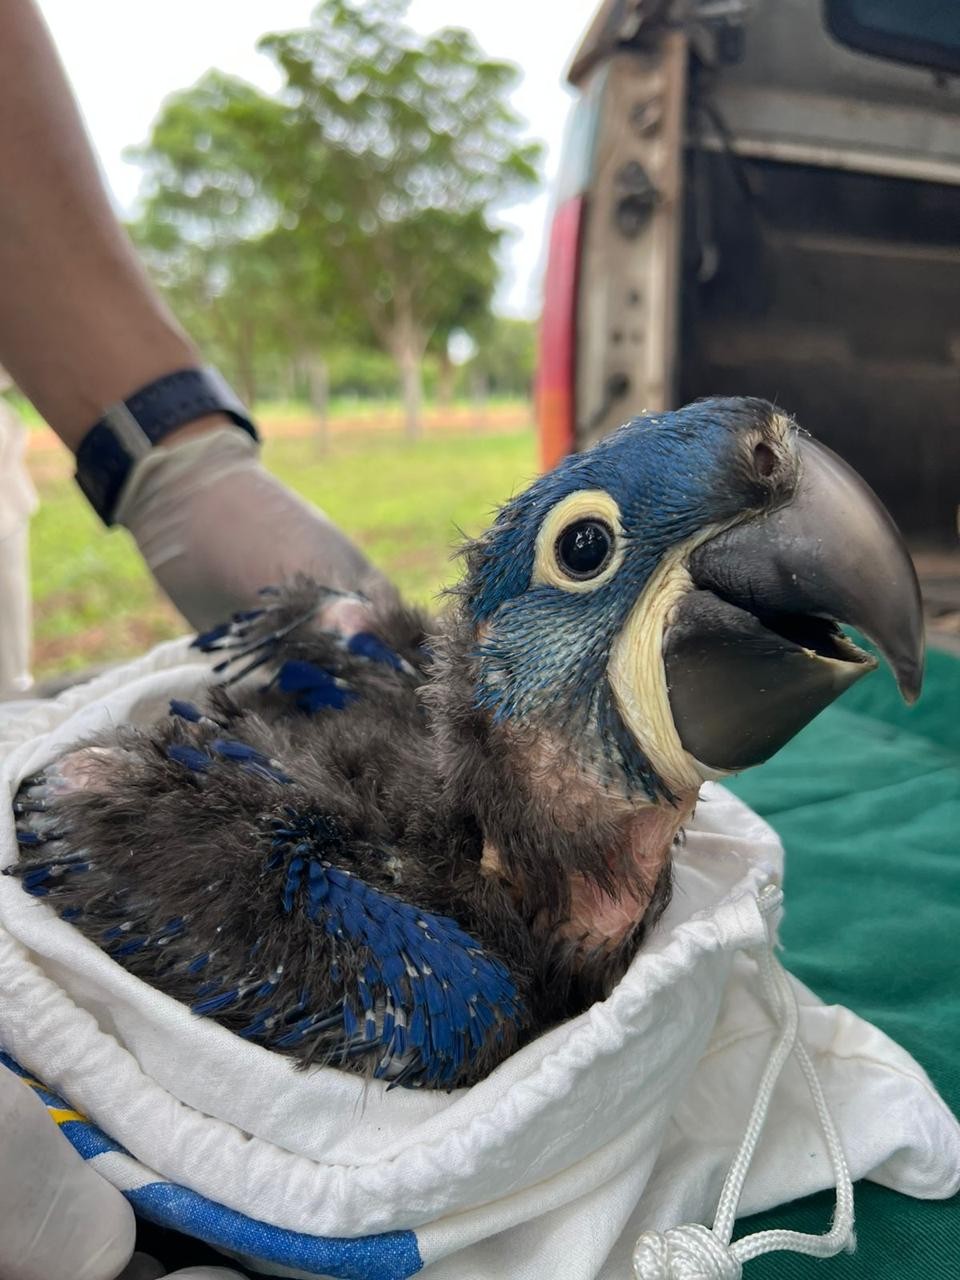 Instituto registra 13 filhotes de arara-azul após queimadas no Pantanal de MT; veja vídeo